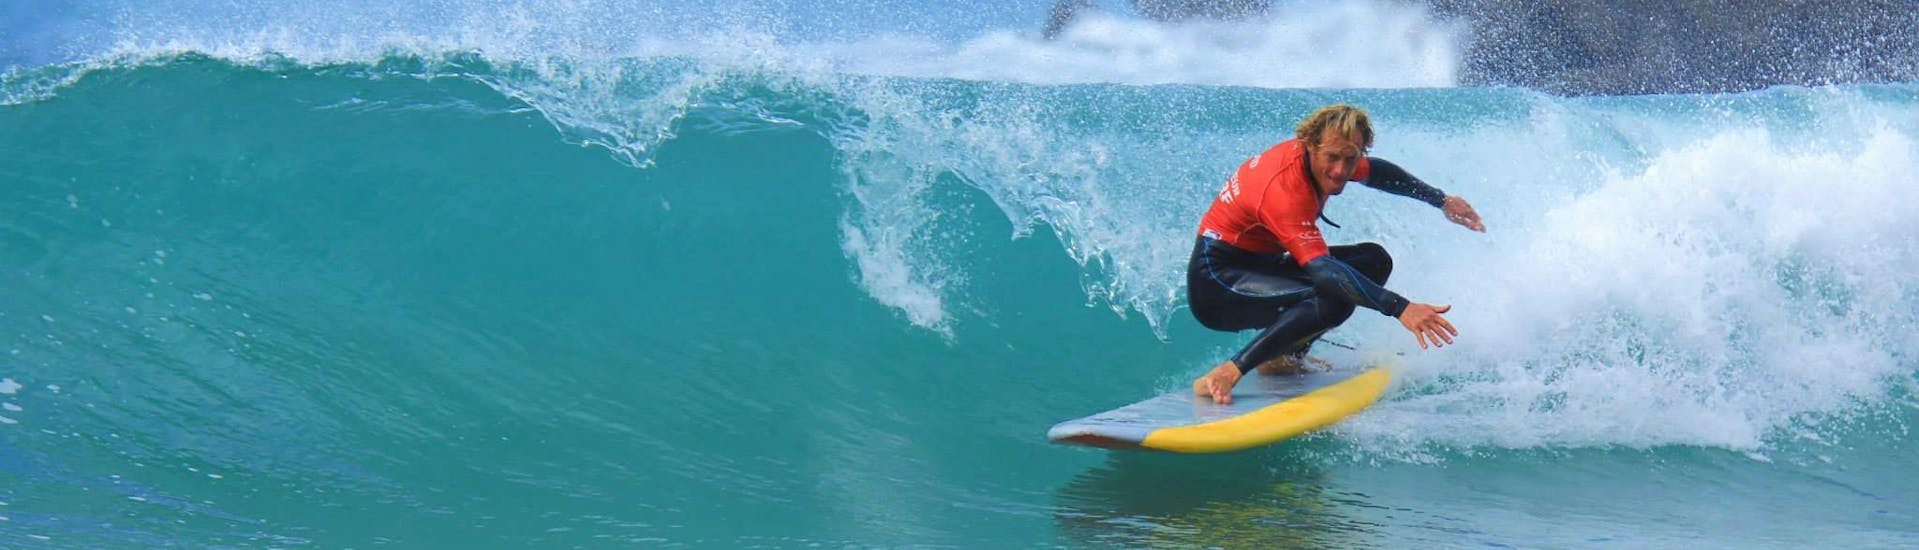 Une surfeuse réussit à surfer une vague grâce à ses cours de surf sur la plage de la Côte des Basques avec La Vague basque.